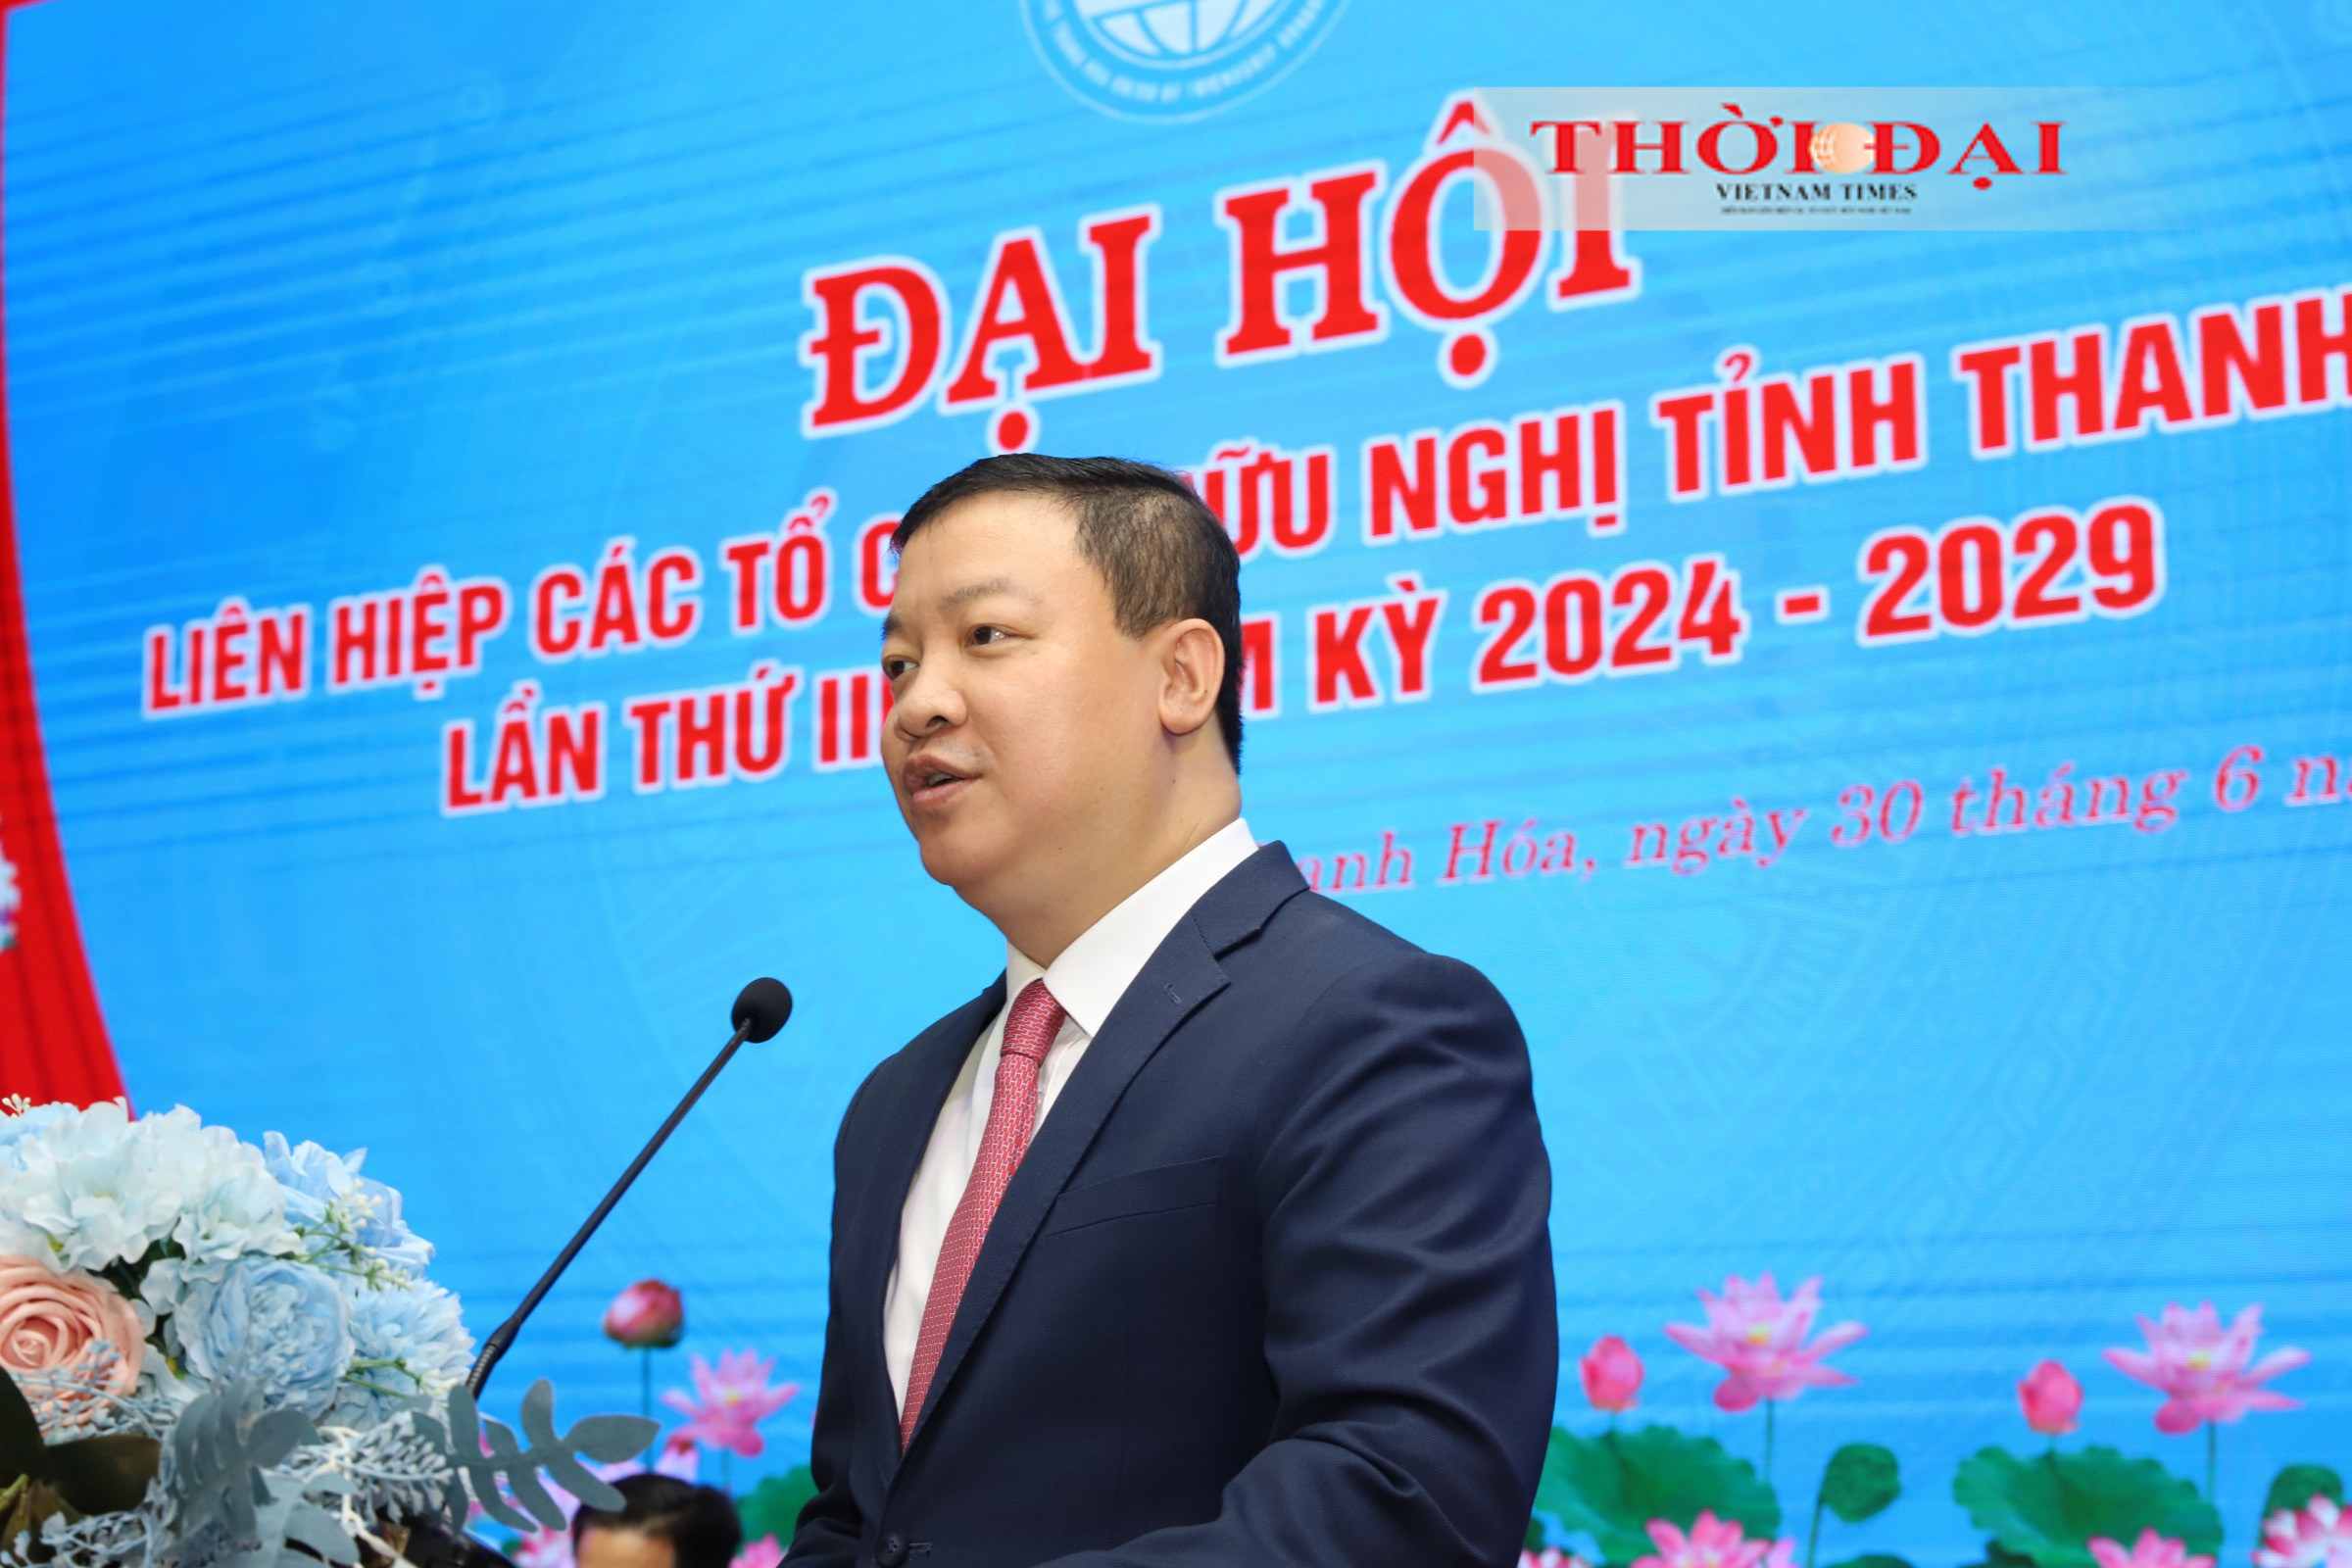 Ông Nguyễn Ngọc Hùng, Phó Chủ tịch Liên hiệp các tổ chức hữu nghị Việt Nam phát biểu tại Đại hội.